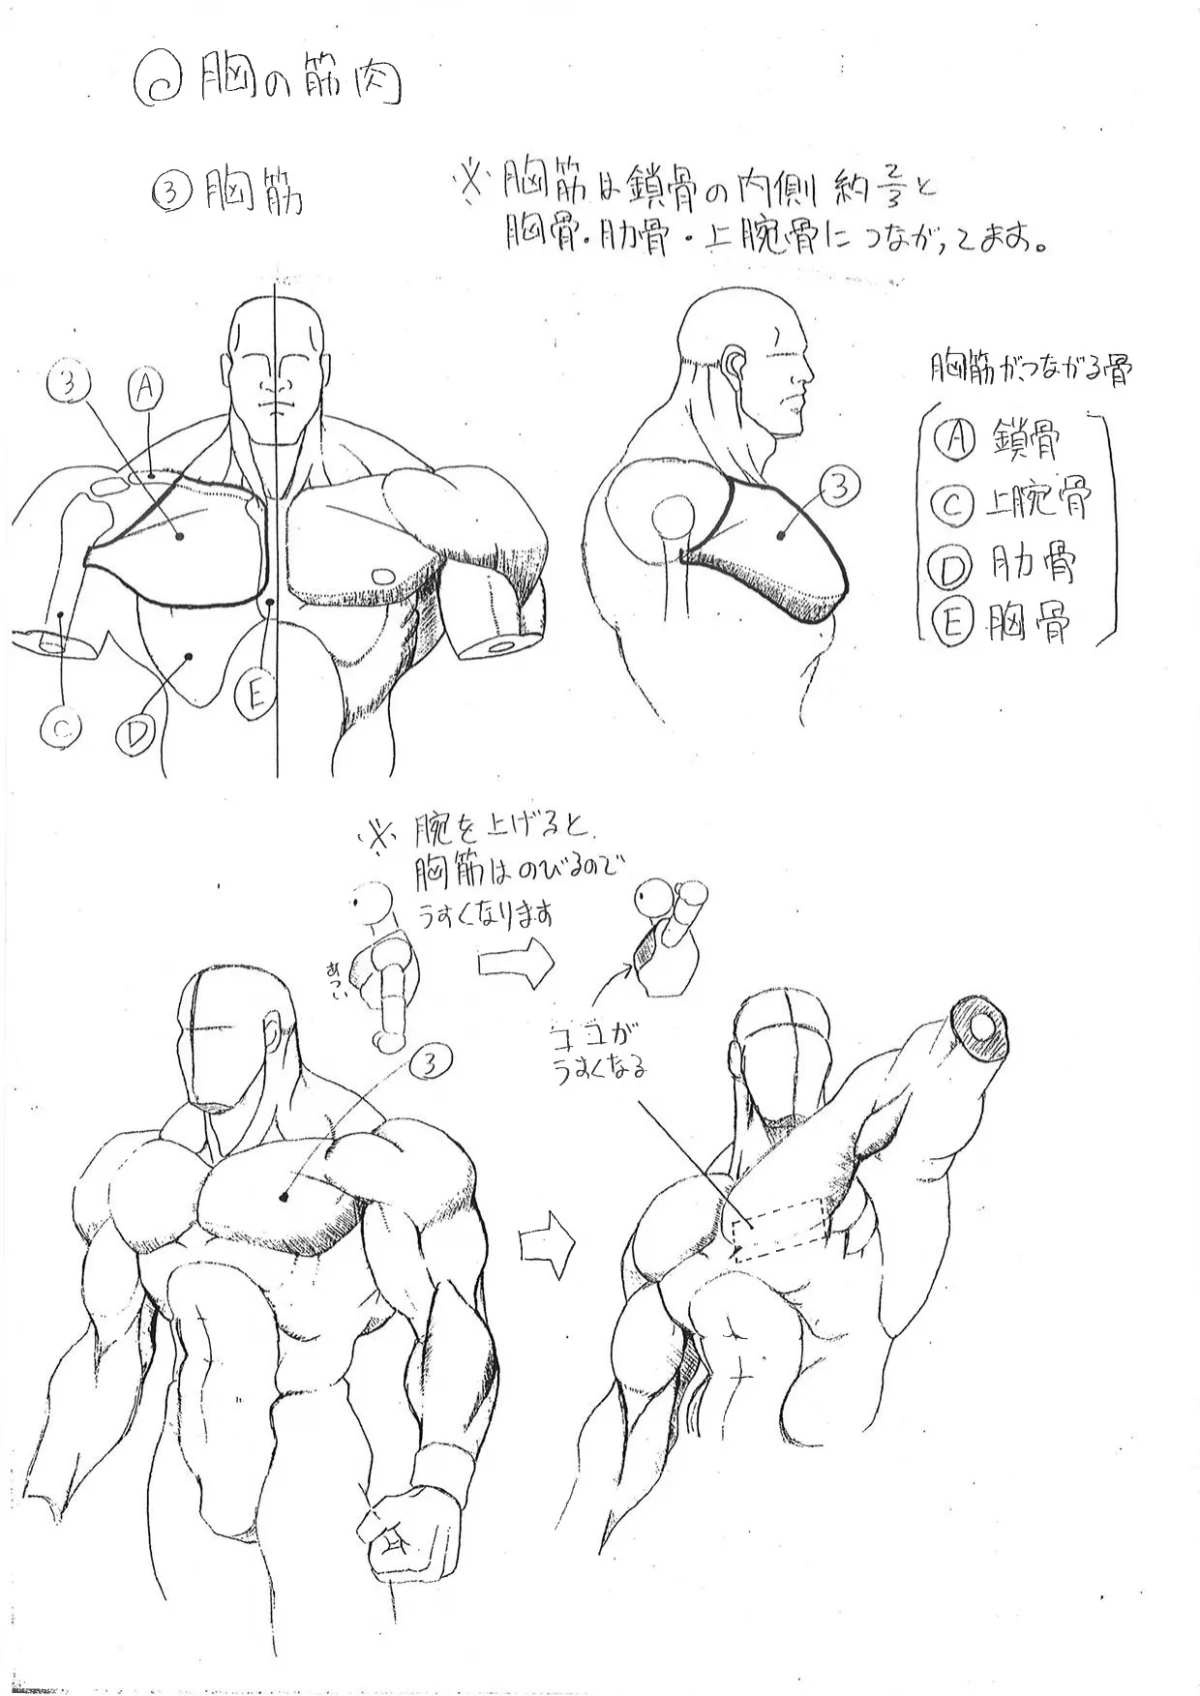 Capcom показала «шпаргалки» по анатомии для дизайнеров Street Fighter - фото 2